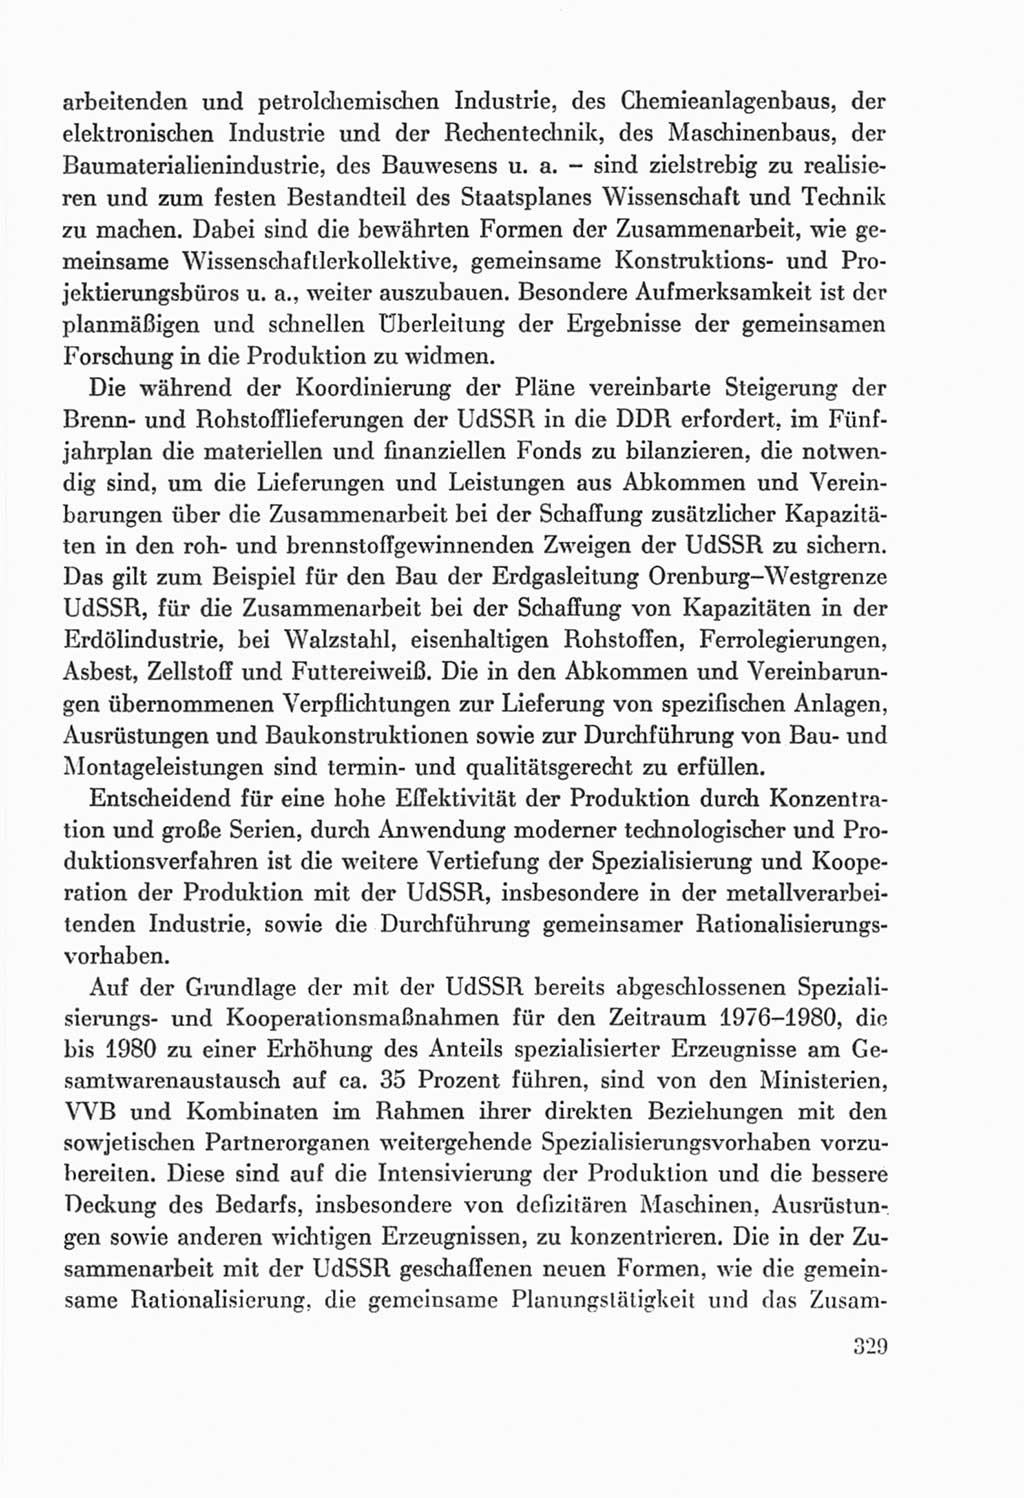 Protokoll der Verhandlungen des Ⅸ. Parteitages der Sozialistischen Einheitspartei Deutschlands (SED) [Deutsche Demokratische Republik (DDR)] 1976, Band 2, Seite 329 (Prot. Verh. Ⅸ. PT SED DDR 1976, Bd. 2, S. 329)